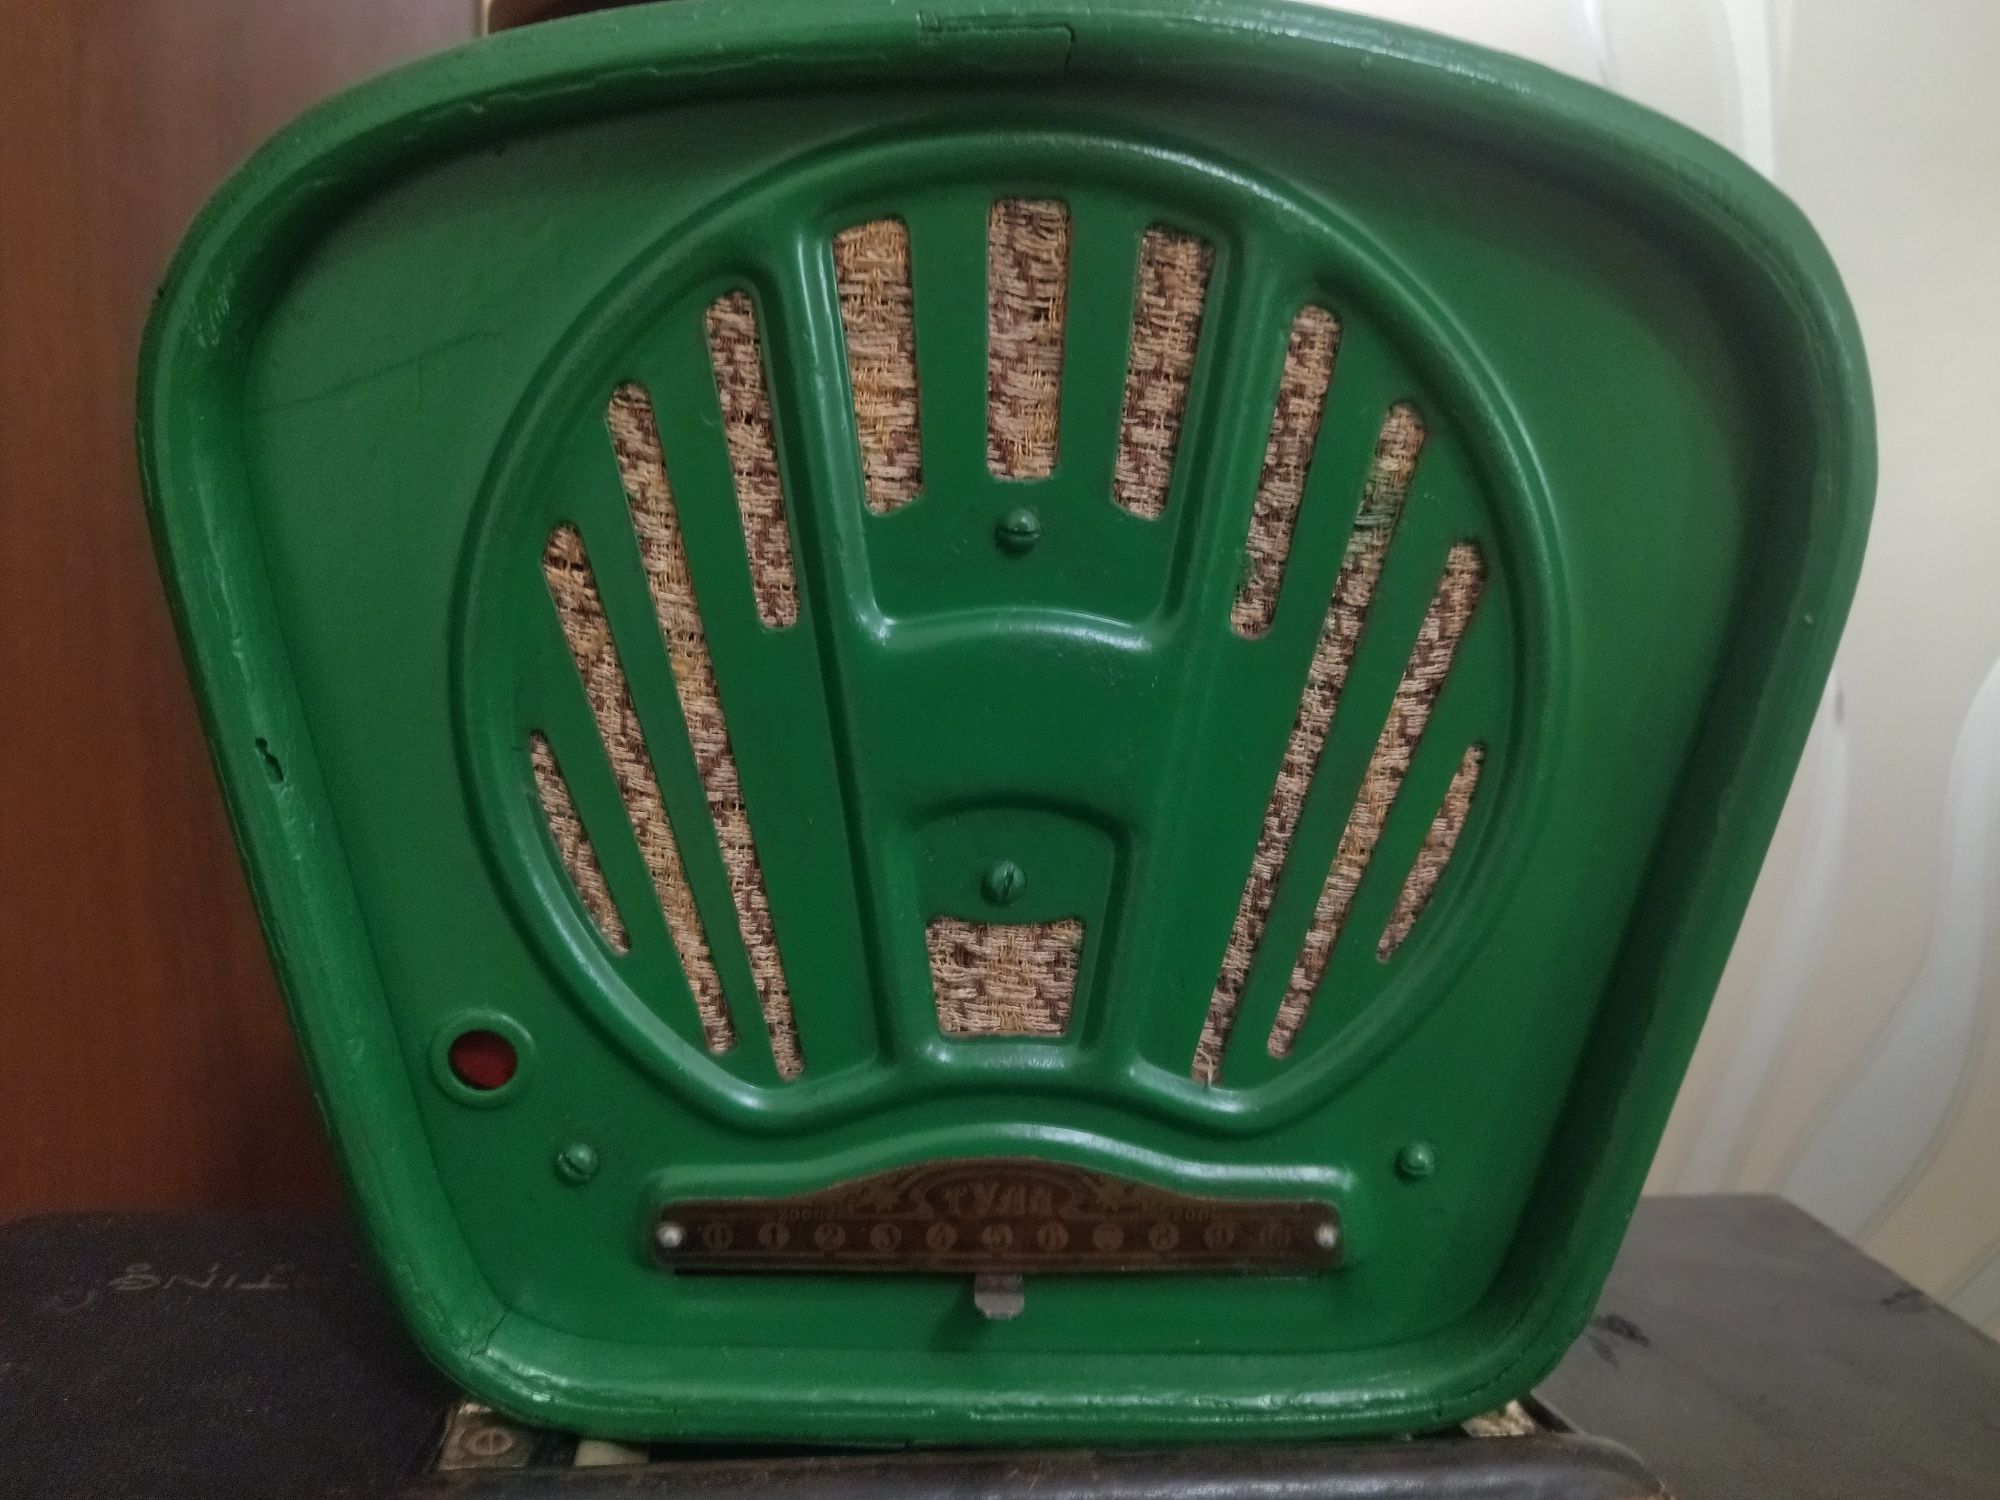 Ламповий ,батарейний радіоприймач "ТУЛА"часів СРСР  1950 рік